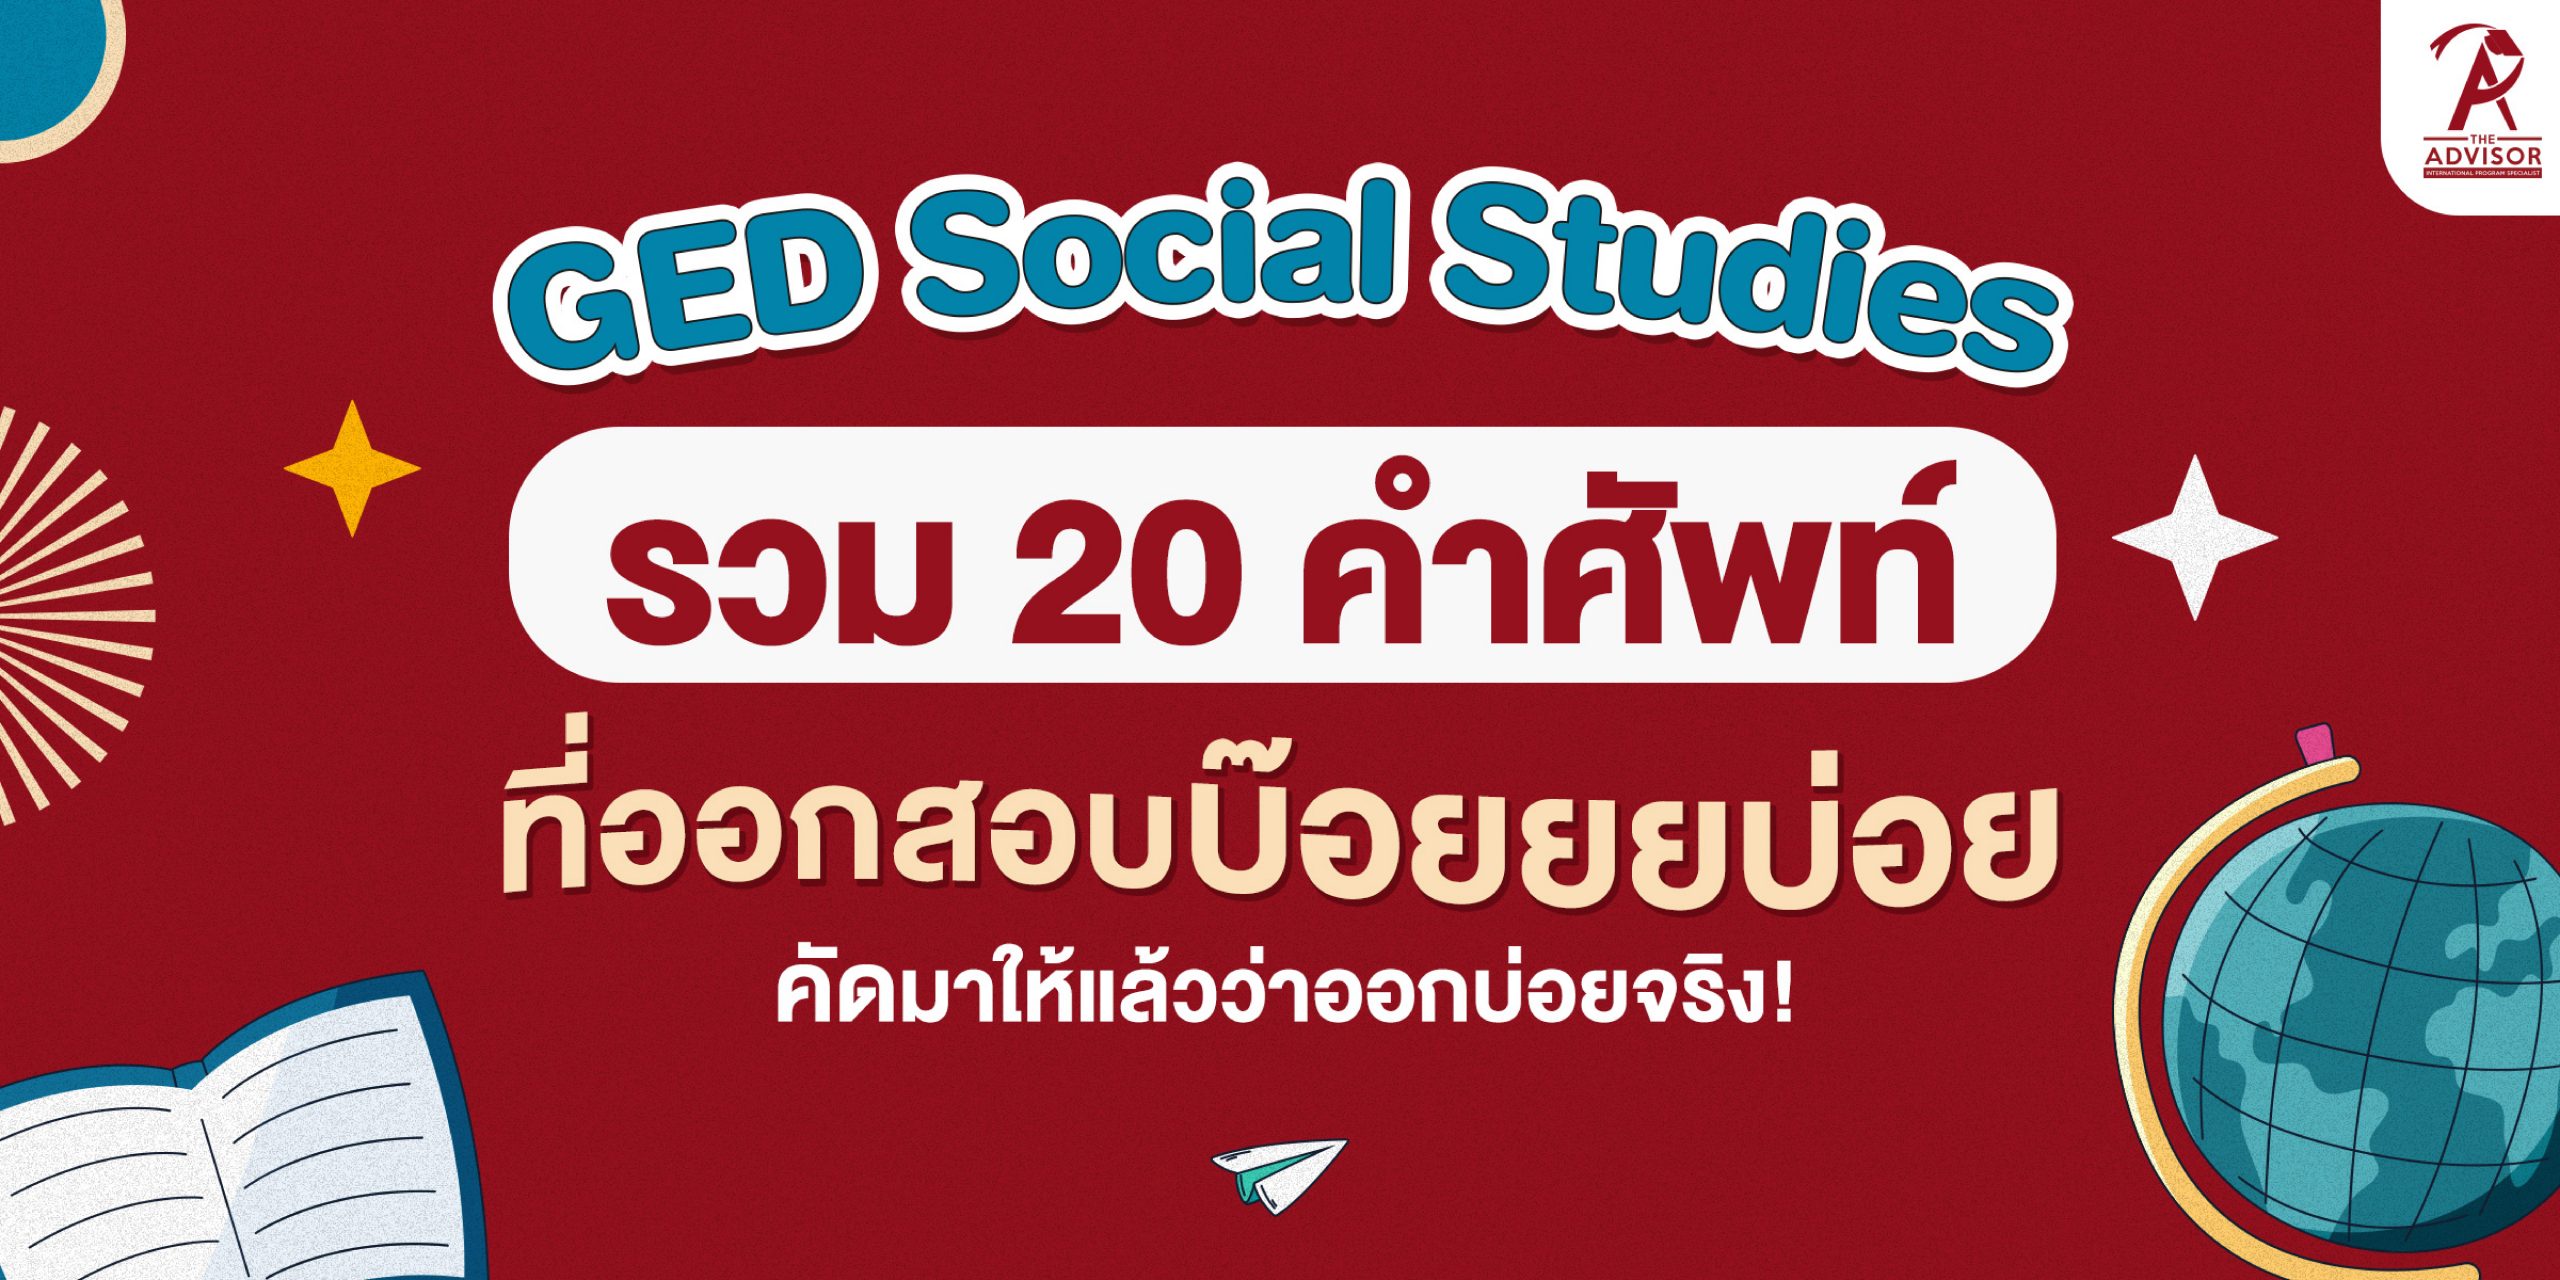 20-ged-social-studies-the-advisor